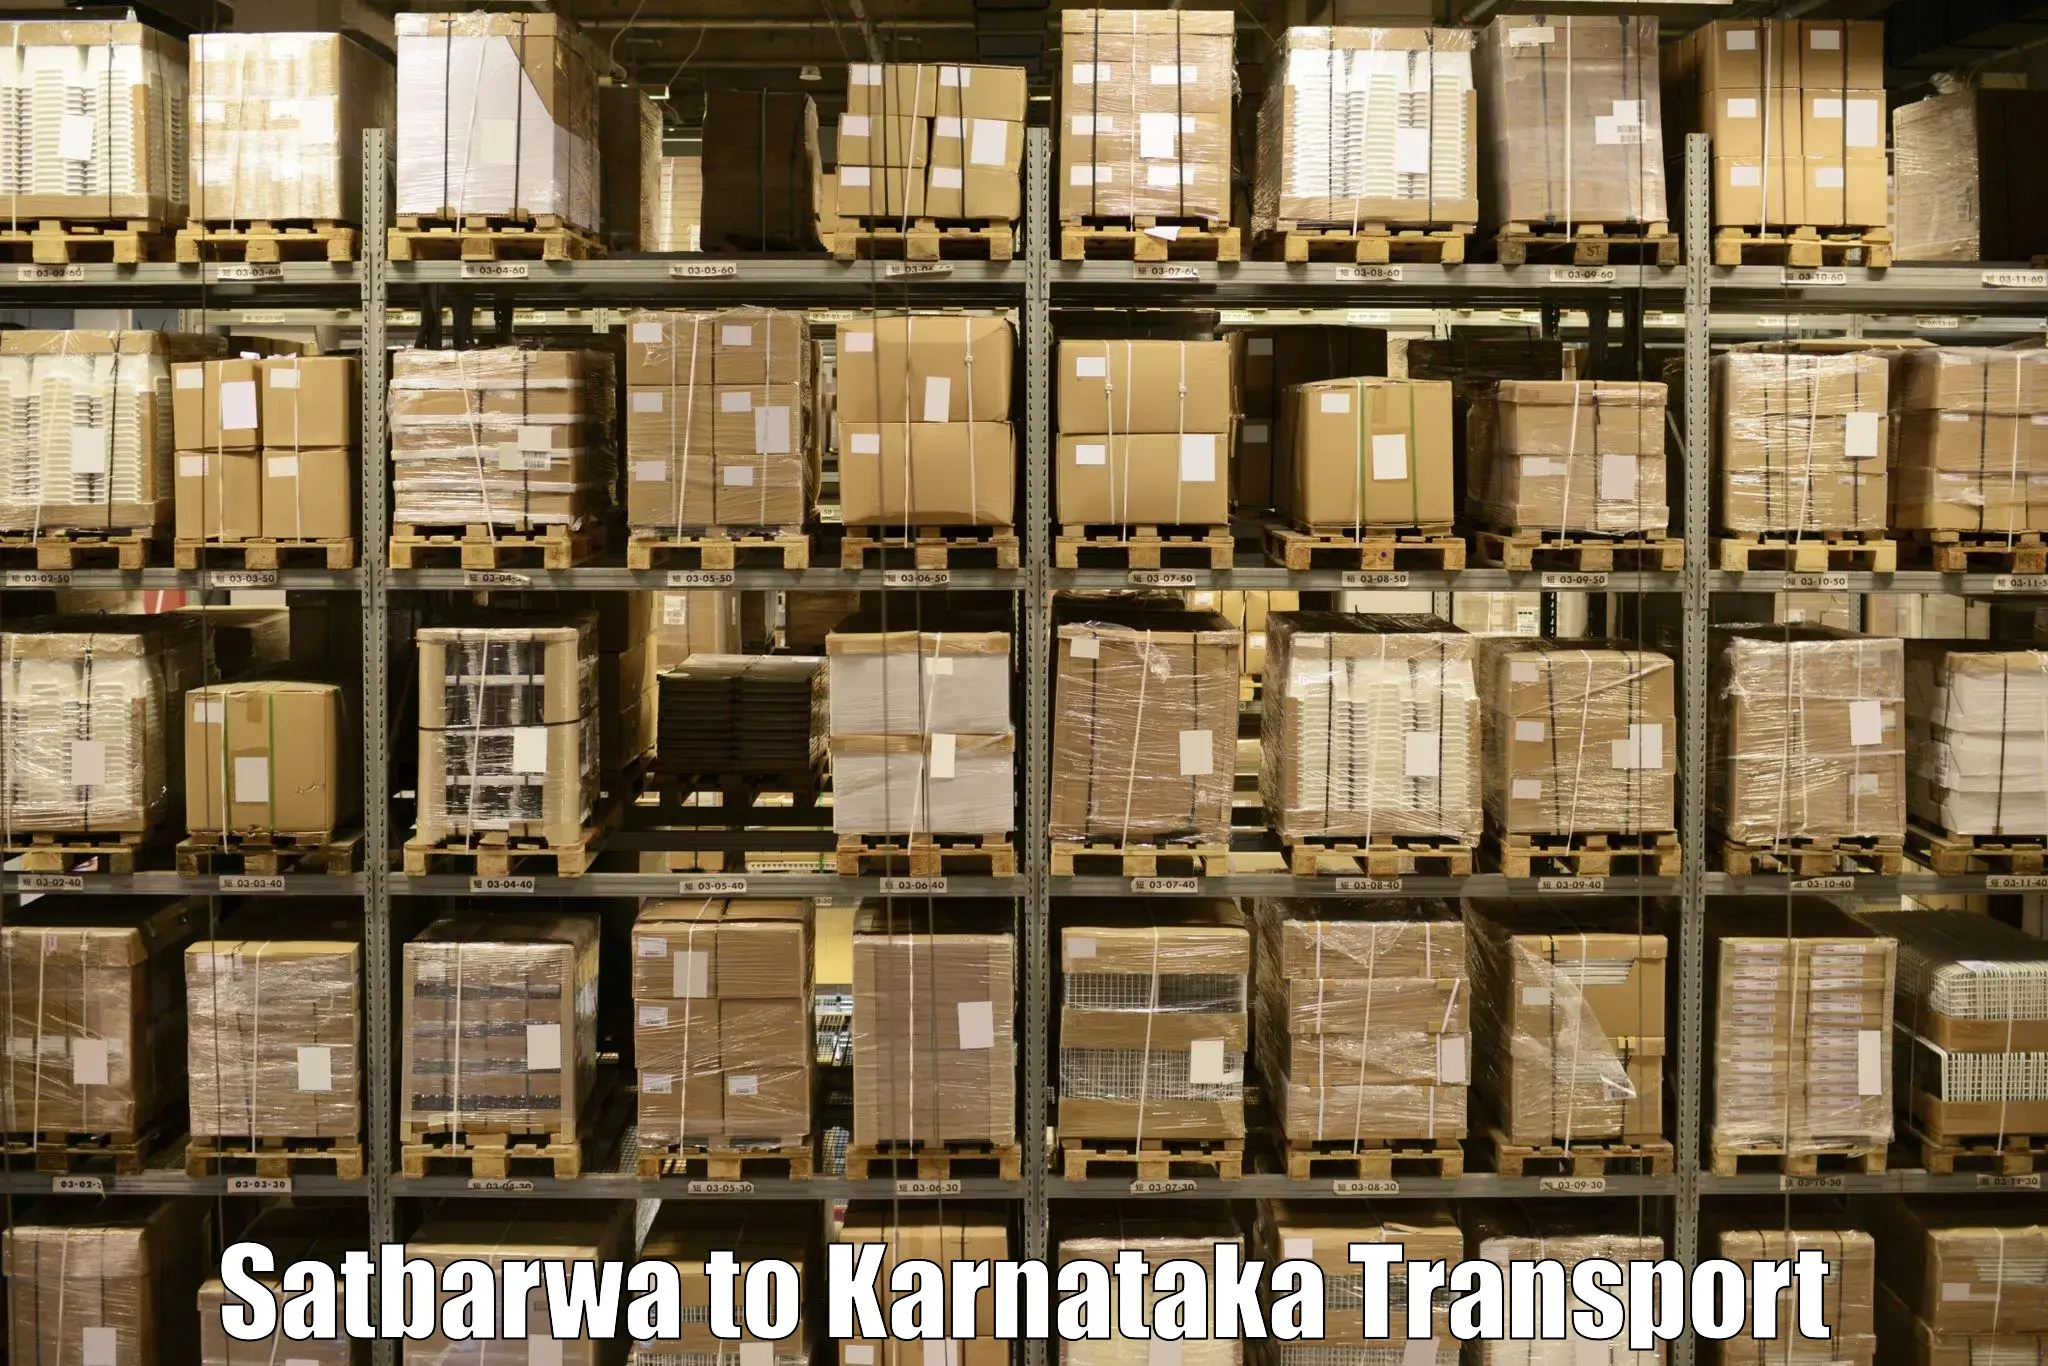 Commercial transport service Satbarwa to Basavakalyan